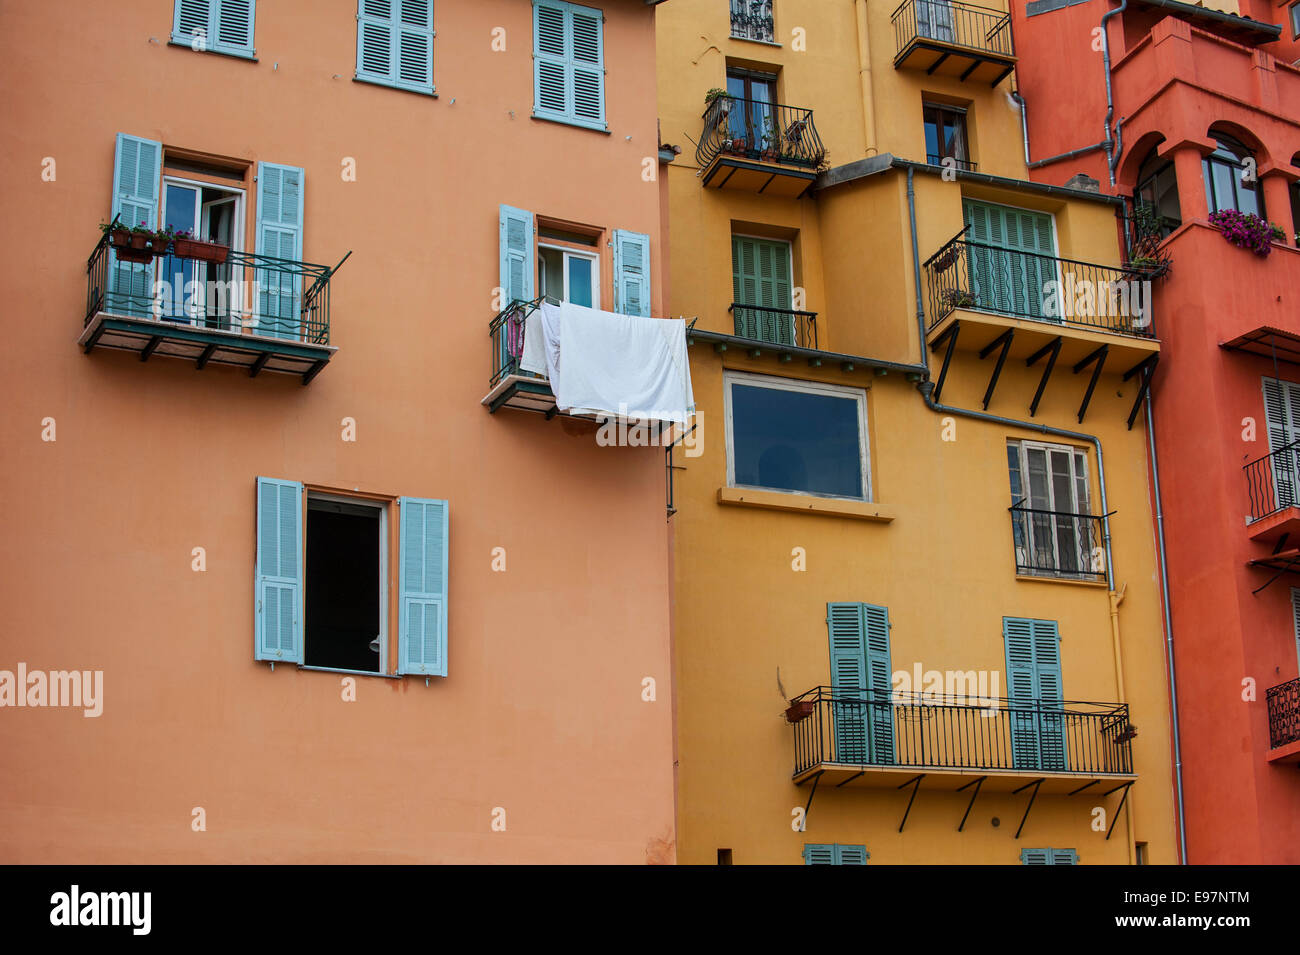 Les balcons et les fenêtres avec stores de couleur pastel des maisons dans la ville Menton le long de la Côte d'Azur, la Côte d'Azur, France Banque D'Images